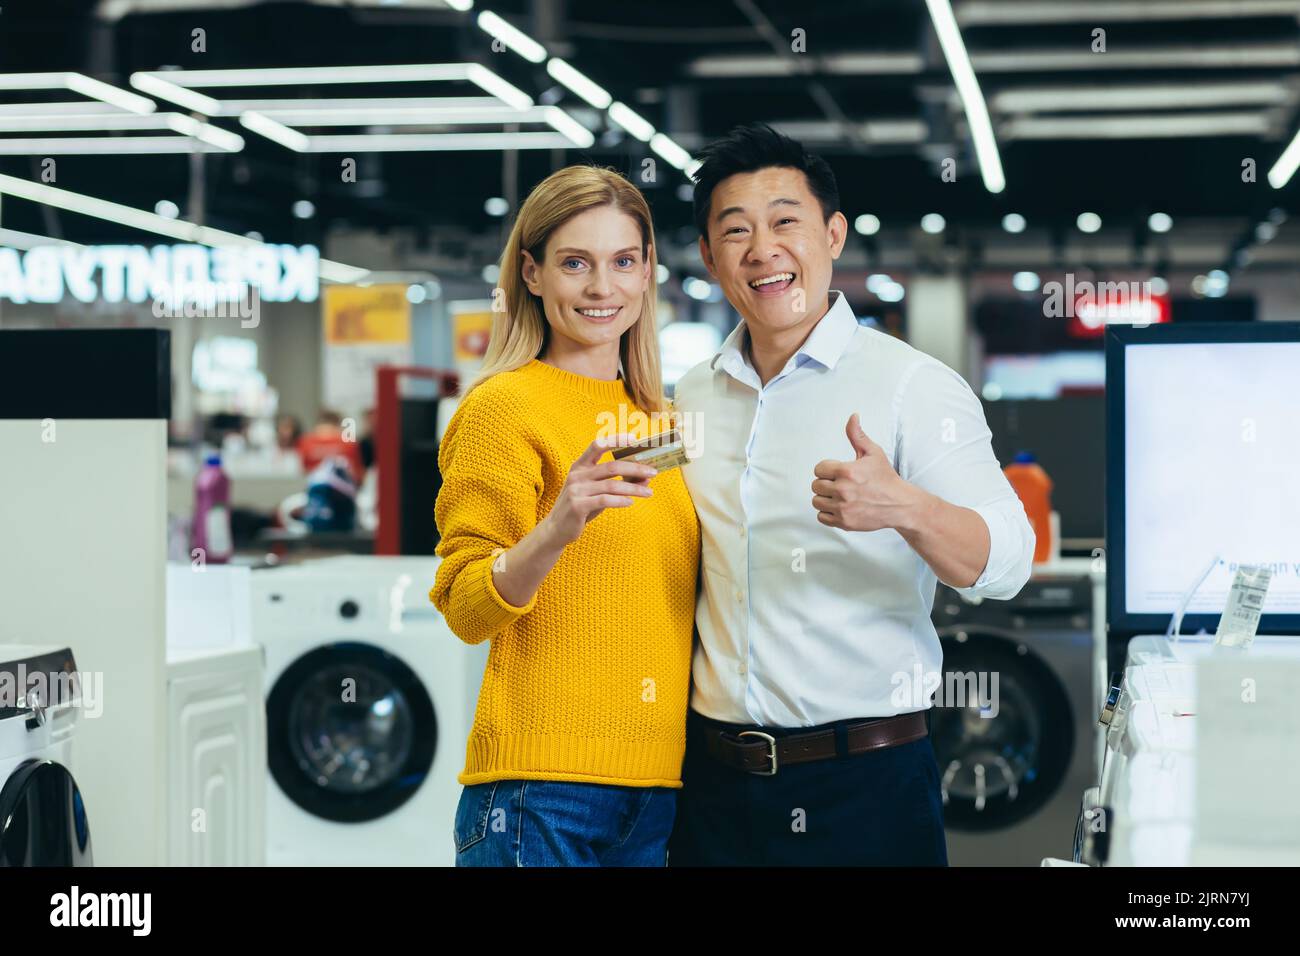 Portrait d'un couple asiatique varié, homme et femme, faisant du shopping dans un supermarché, de l'électronique et des appareils électroménagers, regardant l'appareil photo et souriant, satisfait de la carte de crédit bancaire Banque D'Images